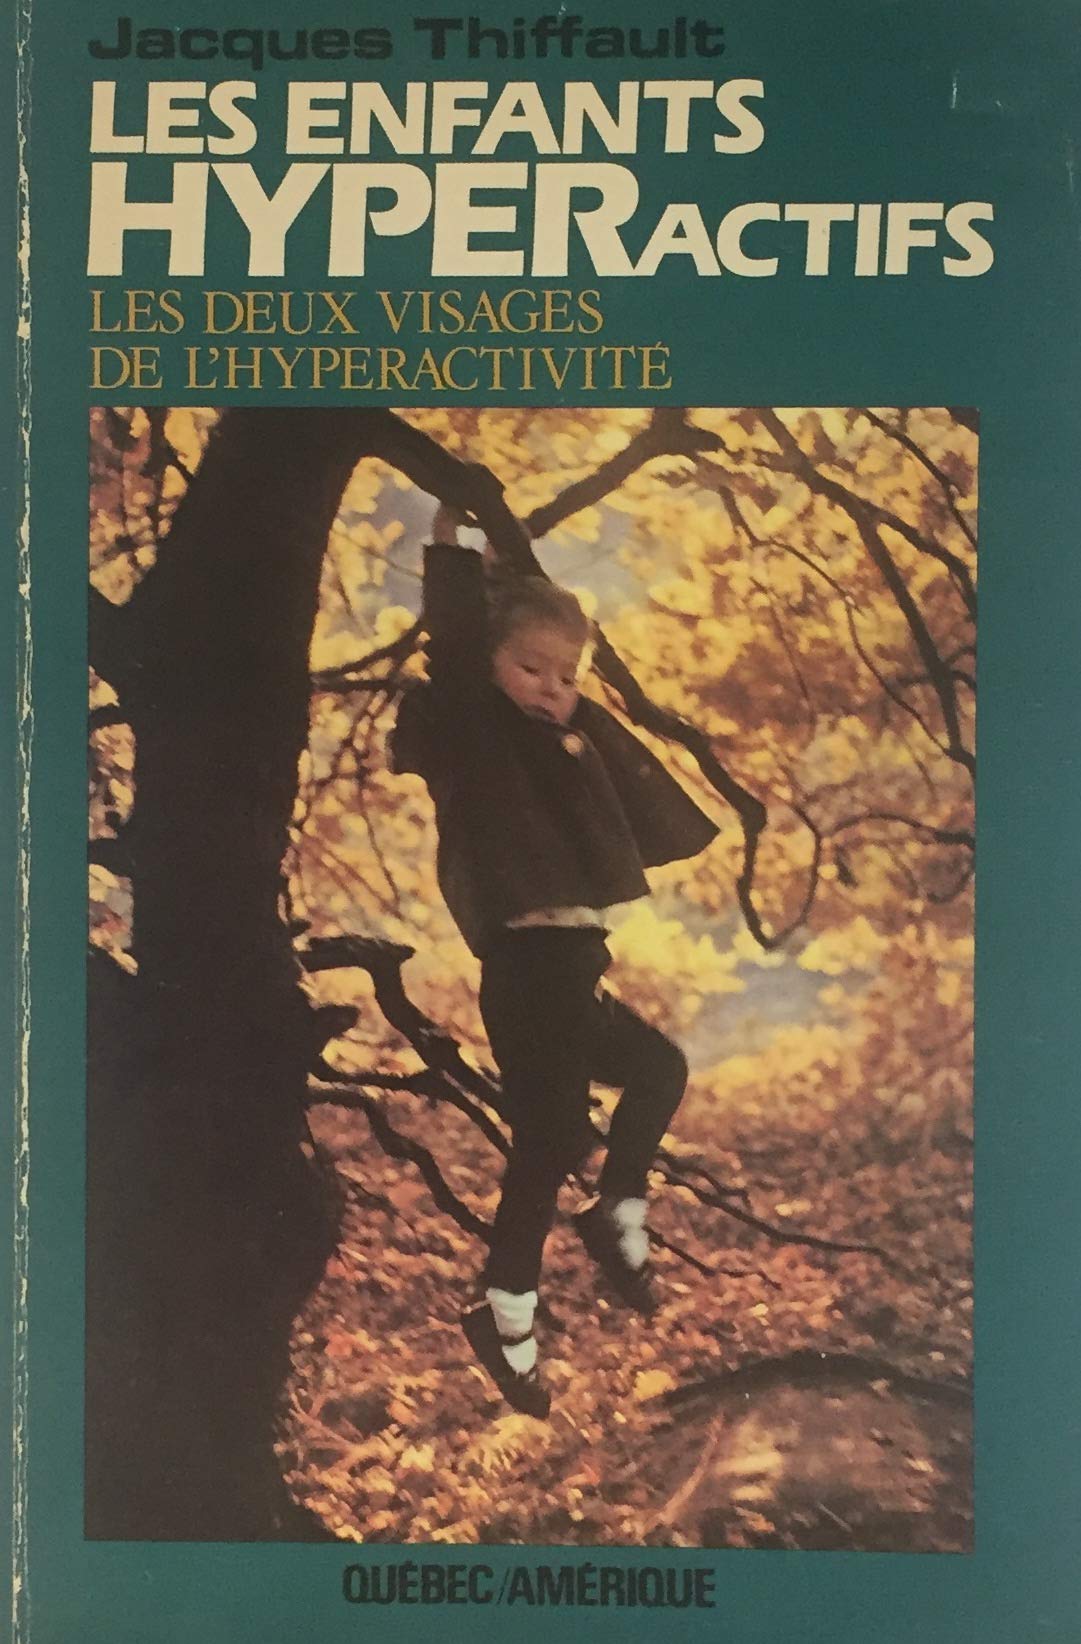 Livre ISBN 2890371328 Les enfants hyperactifs : les deux visages de l'hyperactivité (Jacques Thiffault)